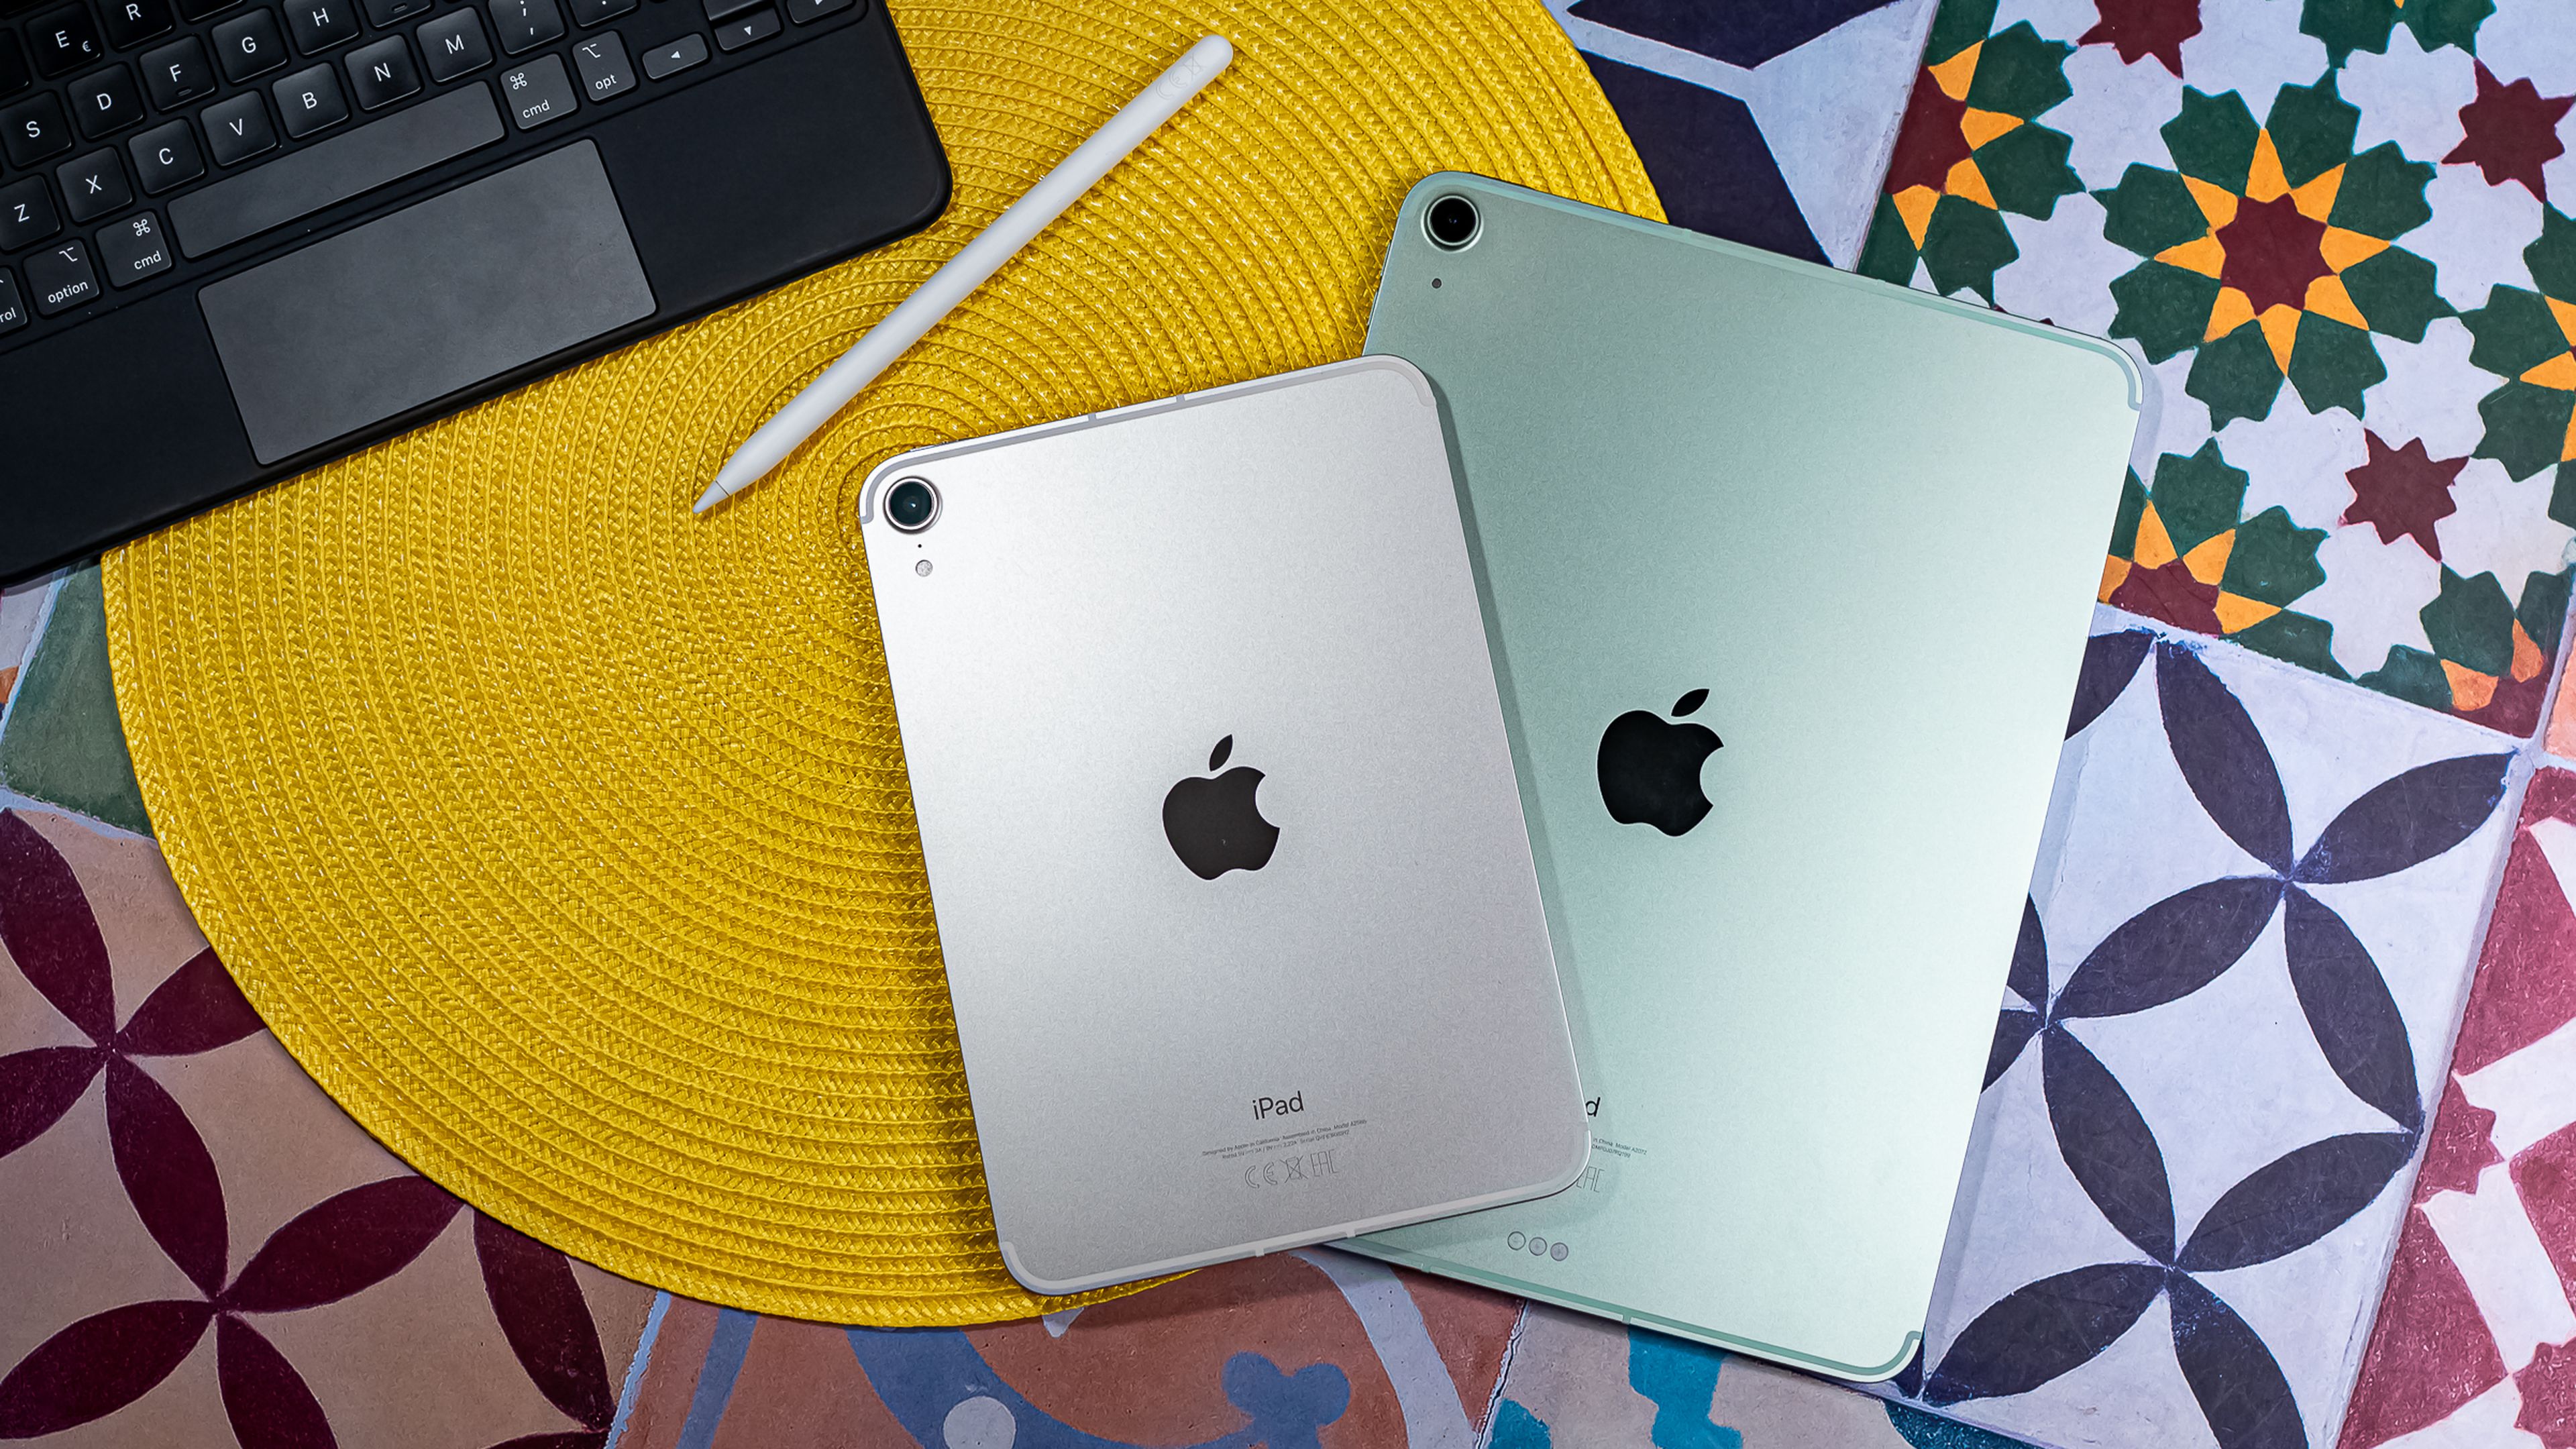 Apple revelaría un nuevo iPad Mini completamente rediseñado este año